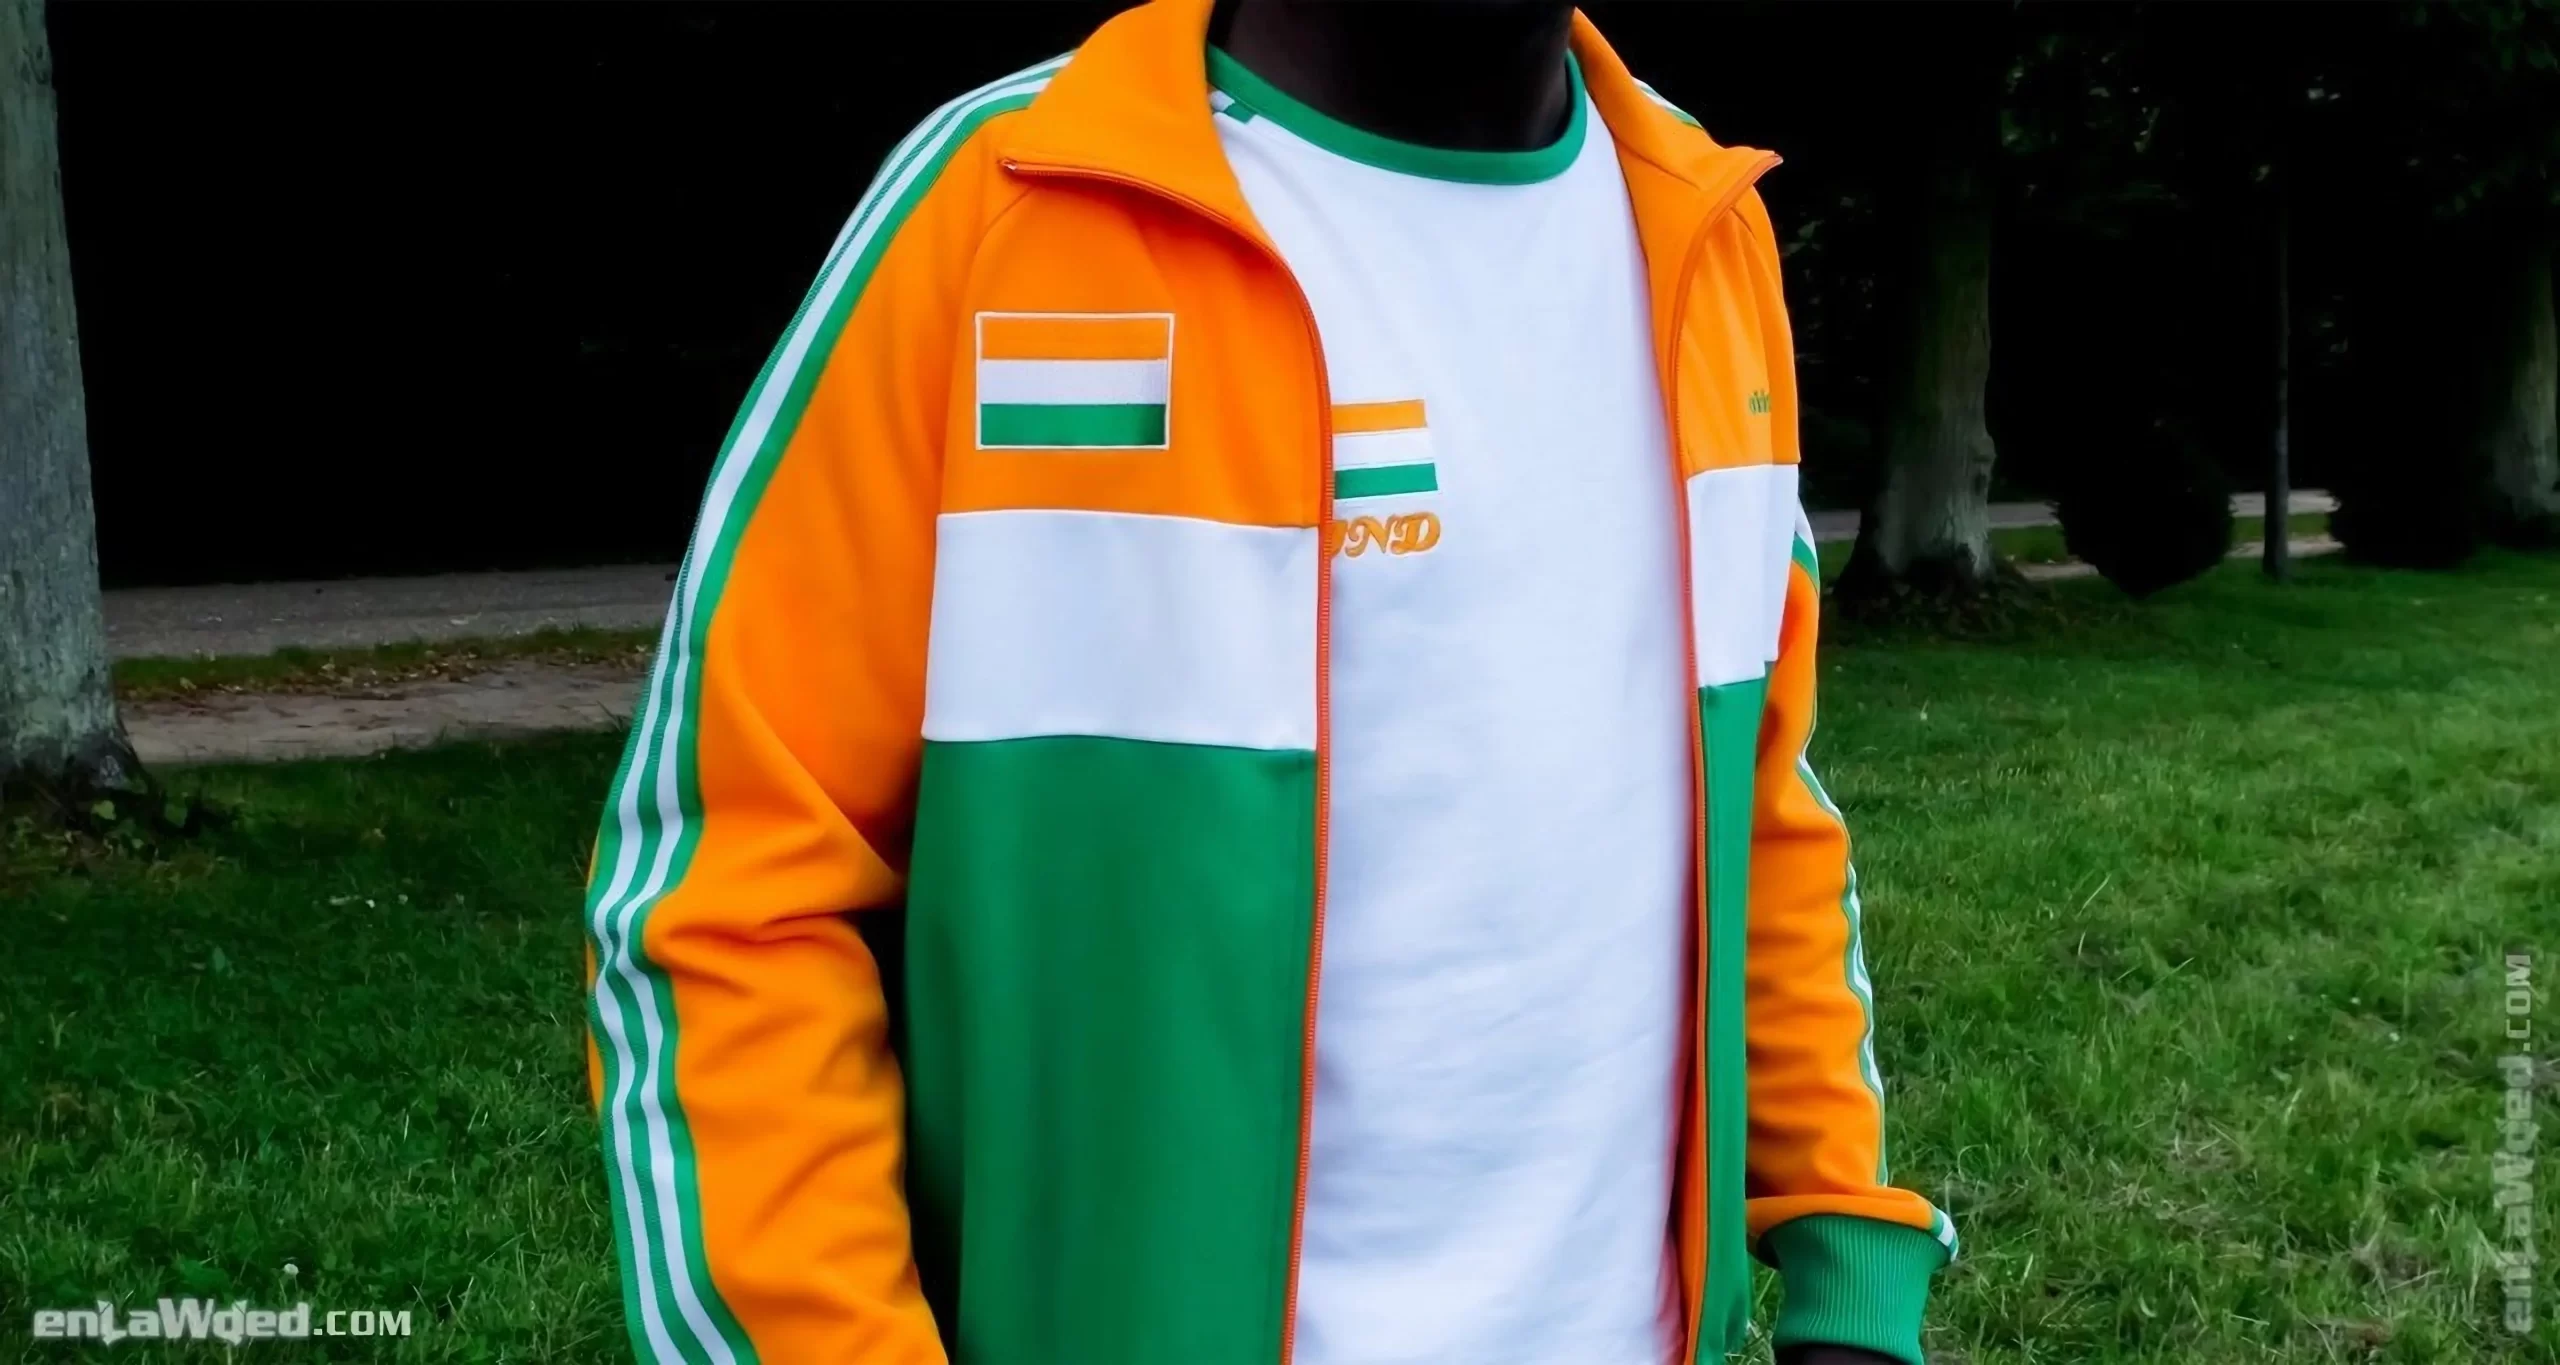 Men’s 2005 India Track Top by Adidas Originals: Jovial (EnLawded.com file #lmcfun2ixwq15c0nvta)